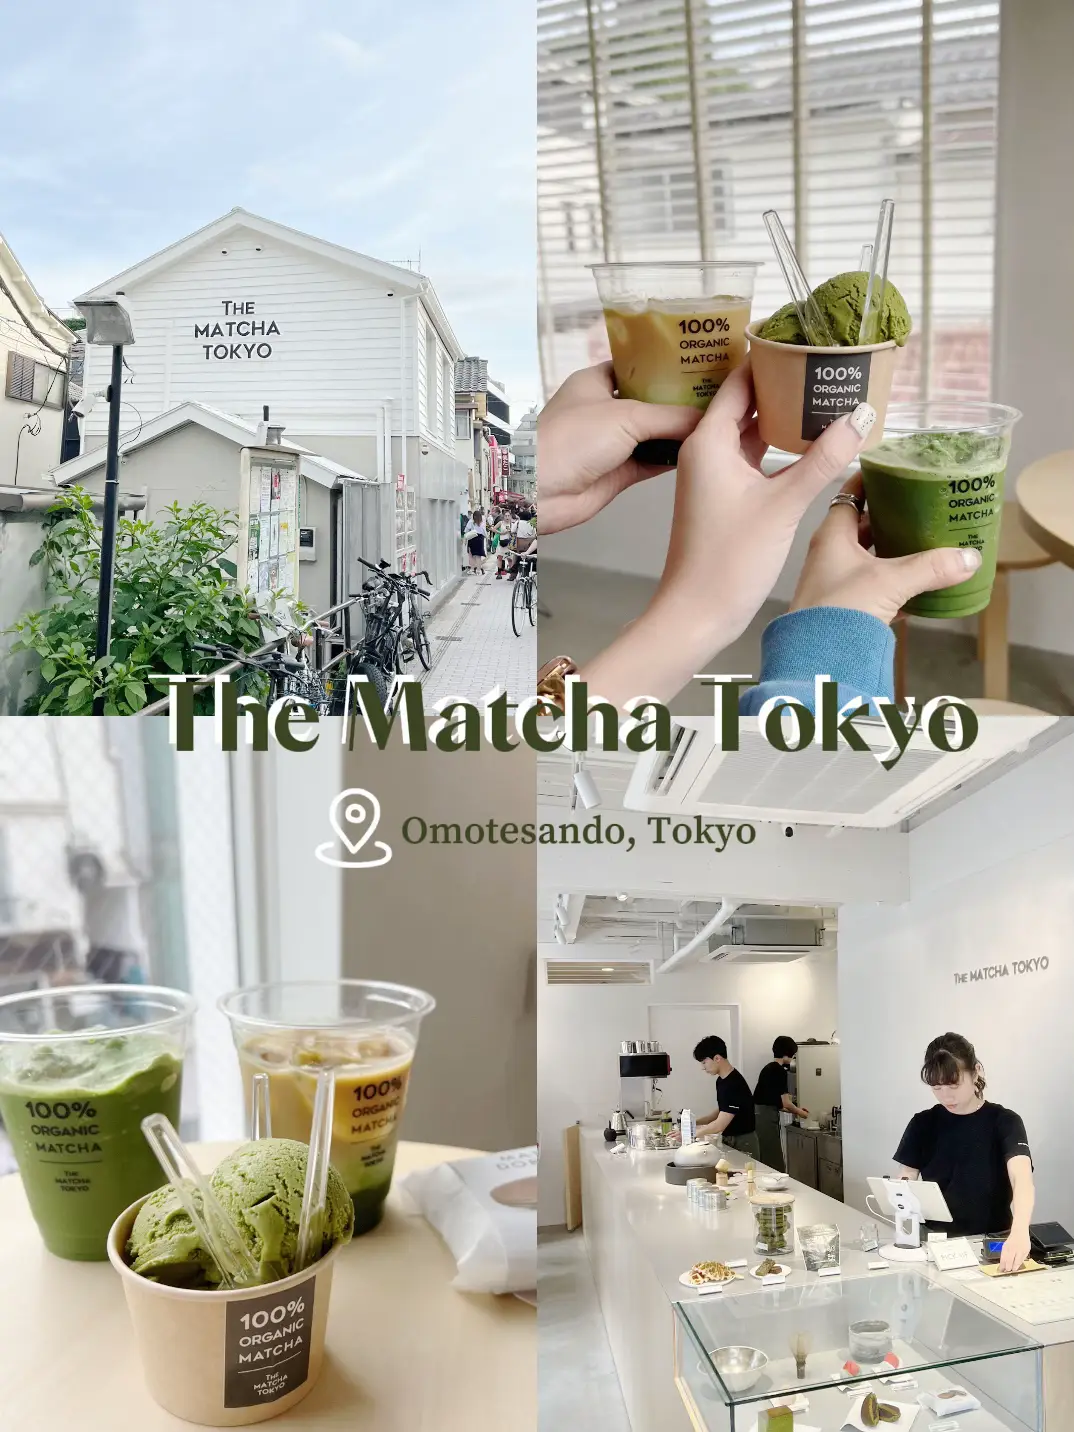 the matcha tokyo menu - Lemon8 Search